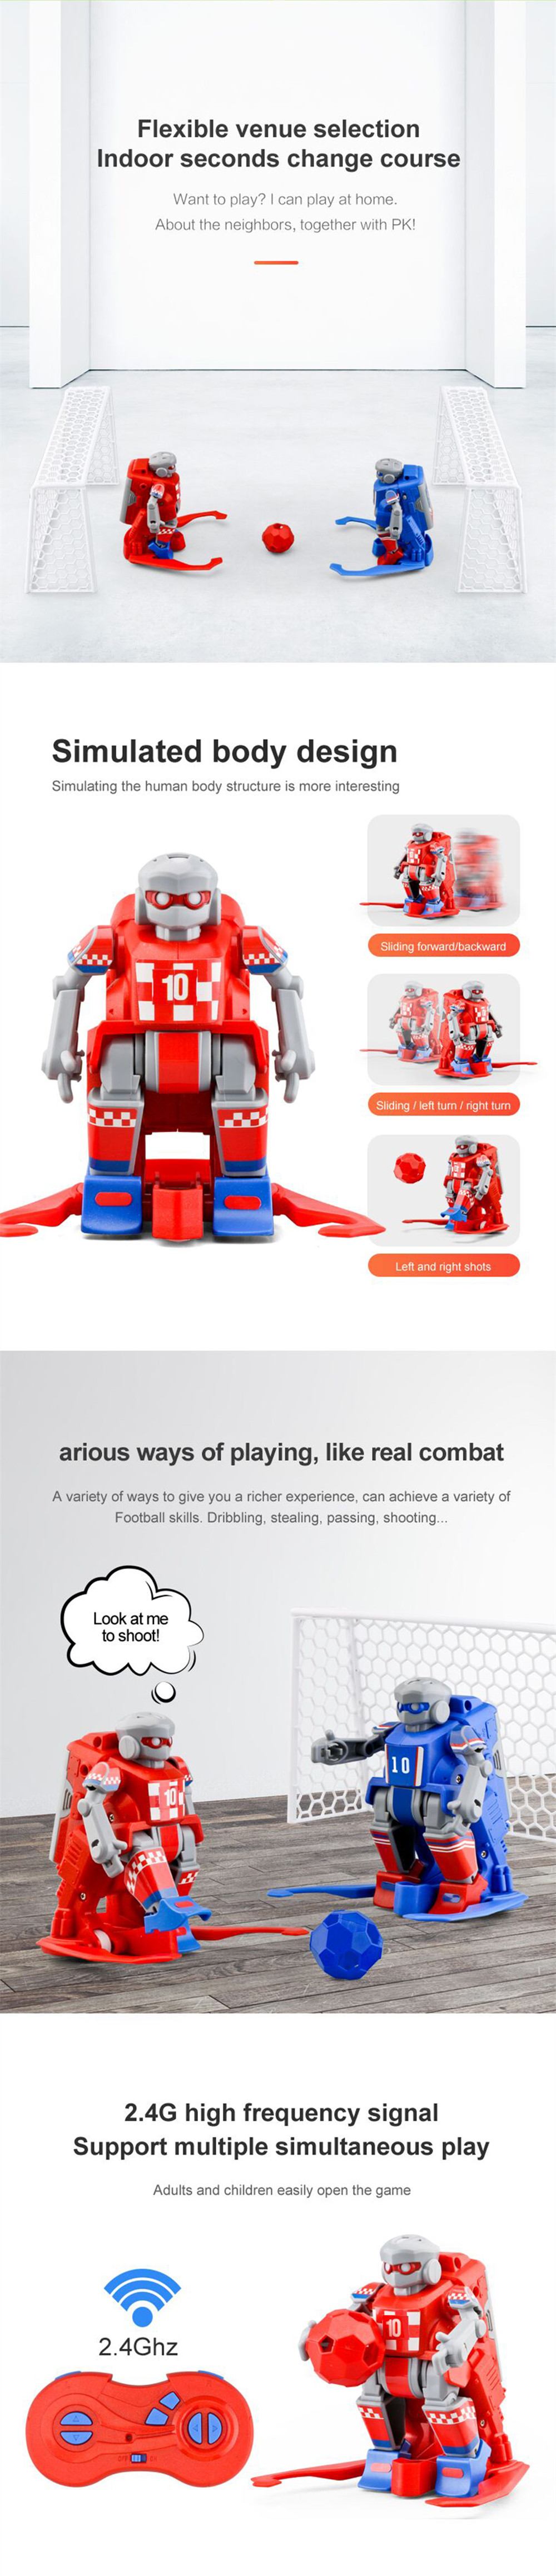 Eachine-ER10-Soccer-Smart-RC-Robot-Play-Football-Robot-Toy-Gift-For-Children-1419676